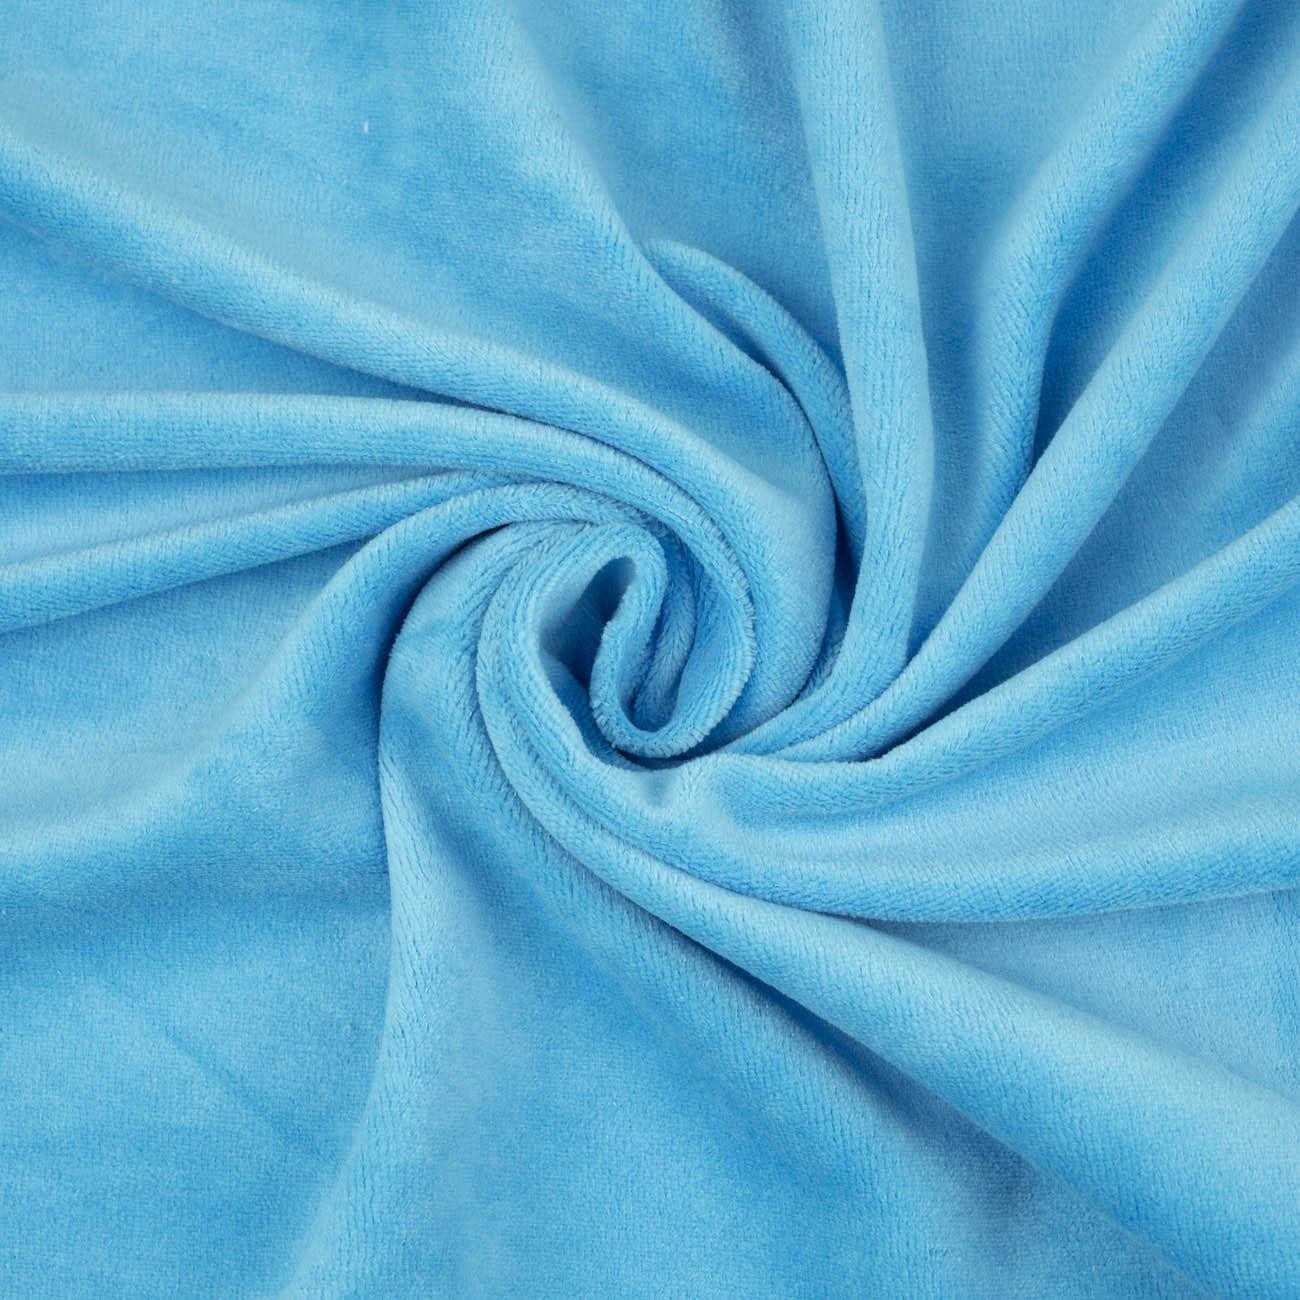 Turquoise - cotton velour